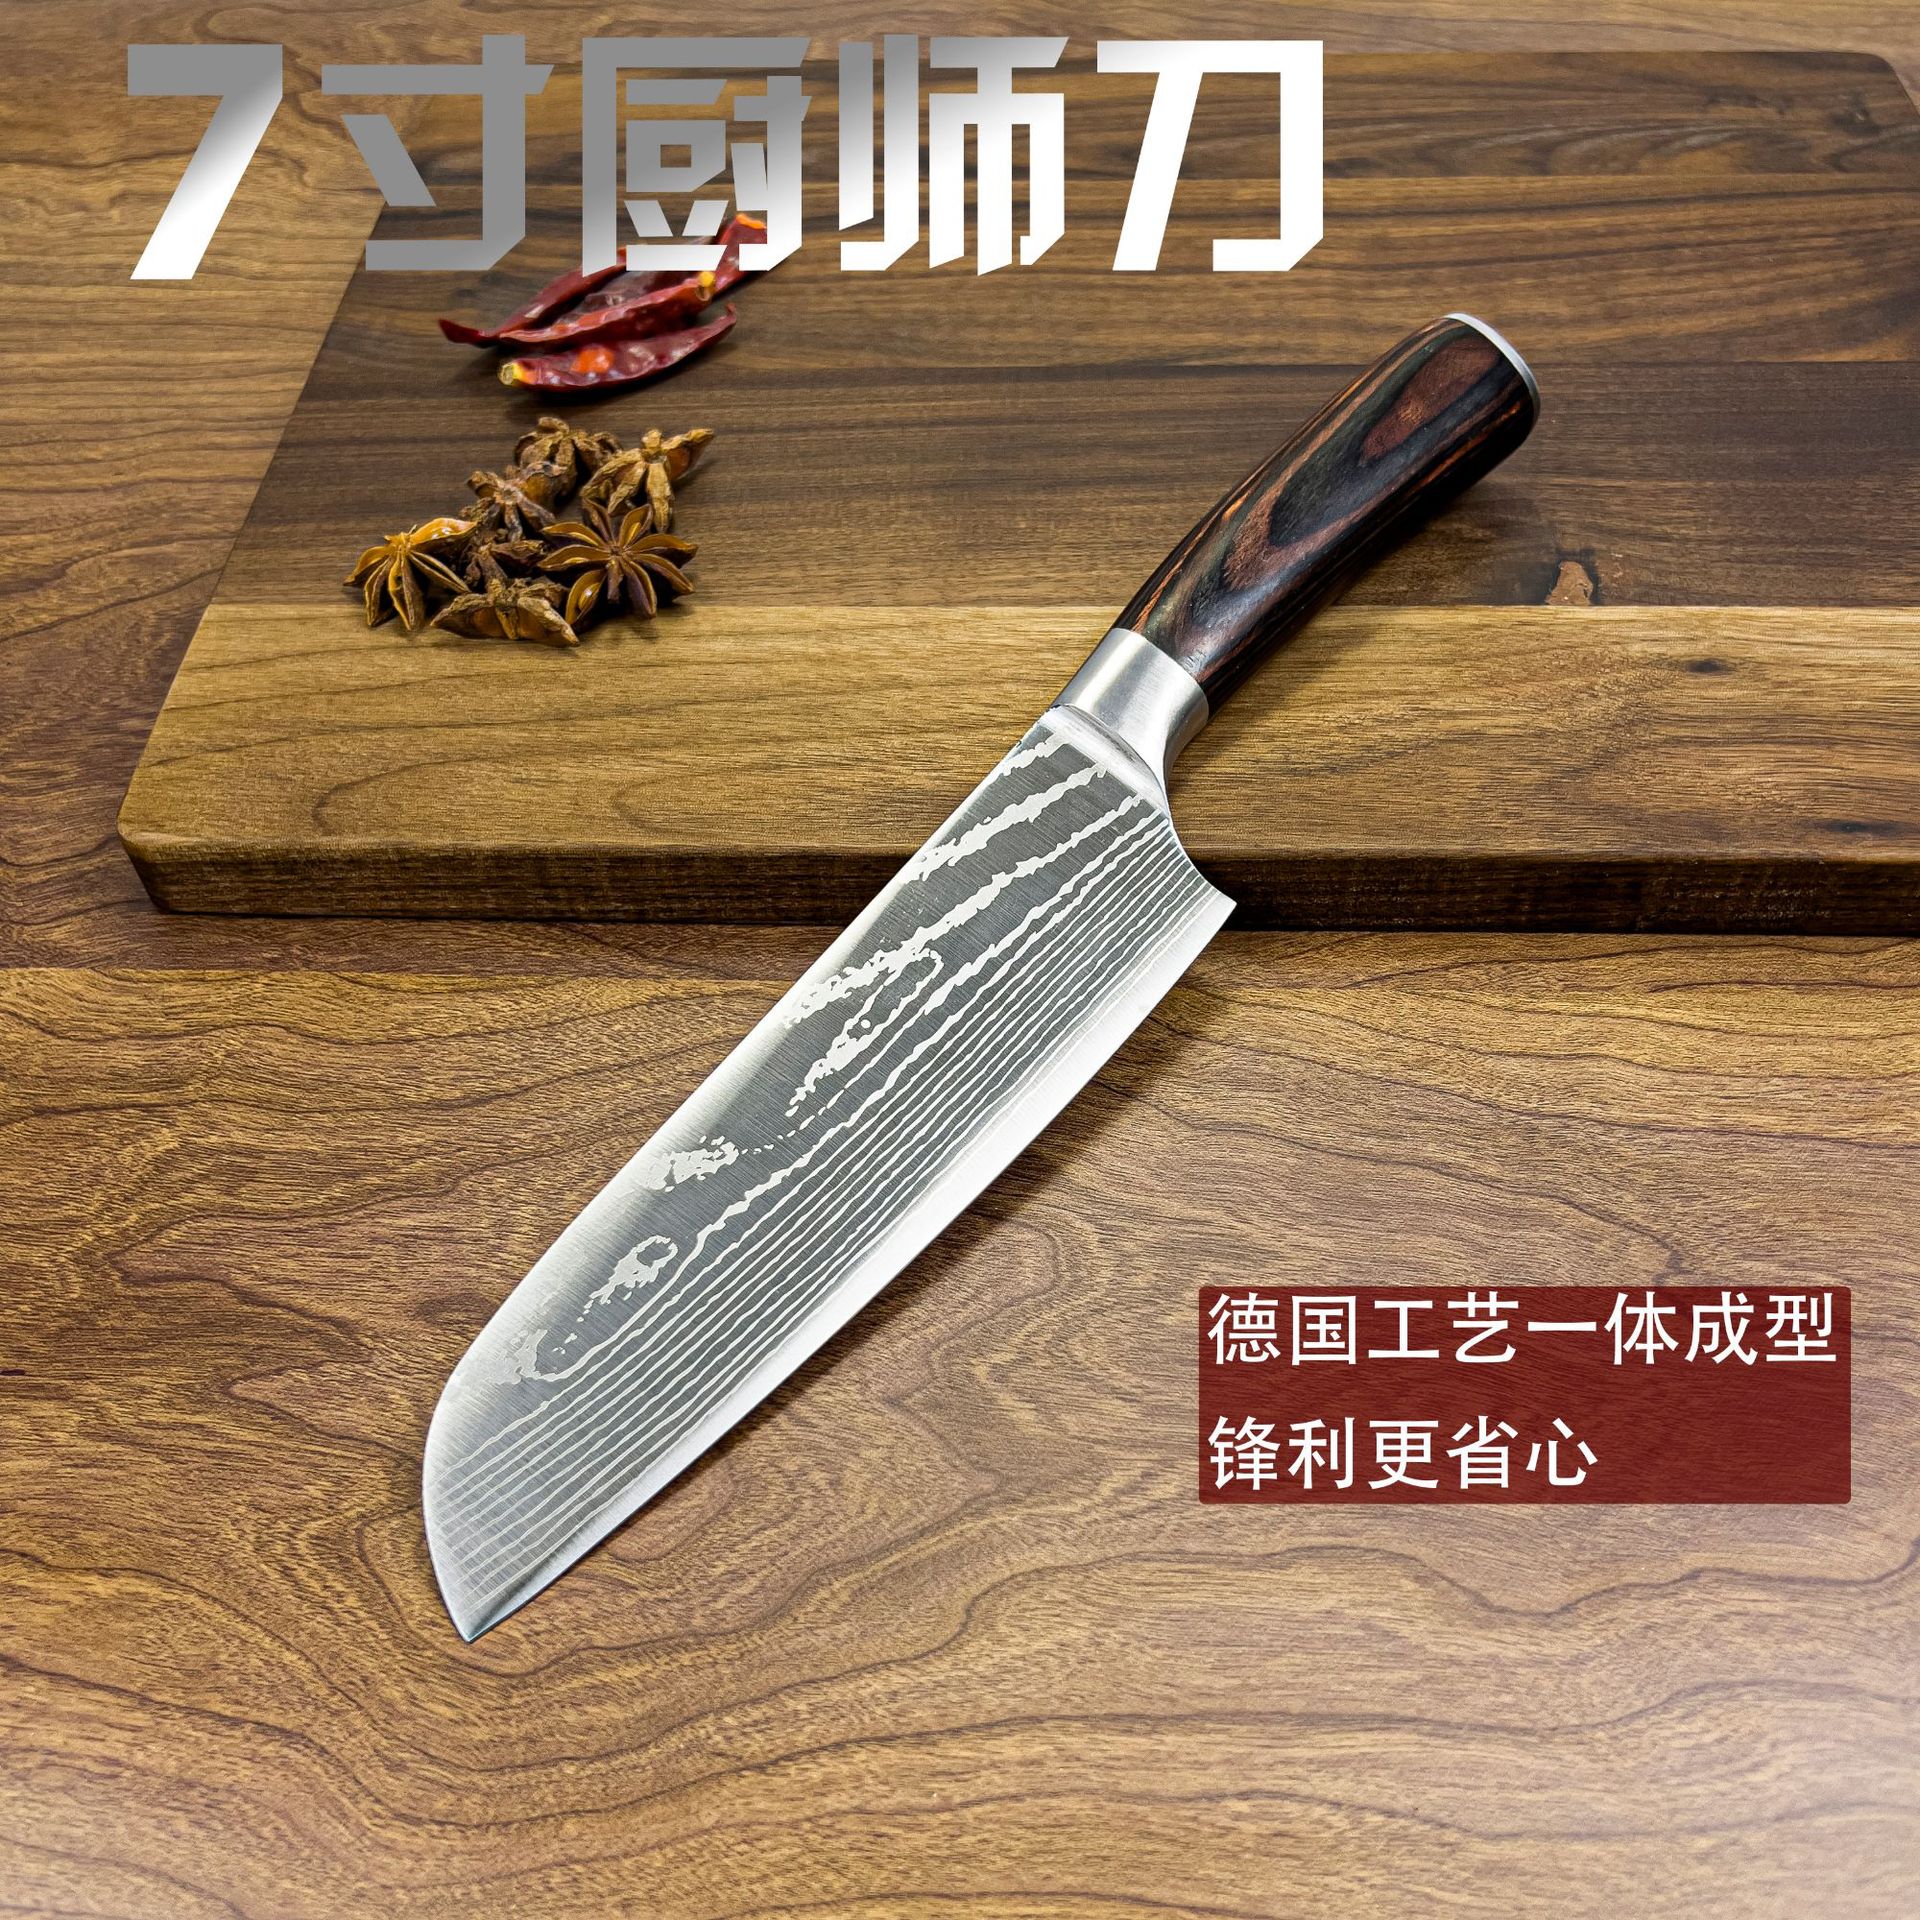 【热销】厂家直销 7寸日式厨师刀大马士革纹日式厨刀现货锋利厨刀